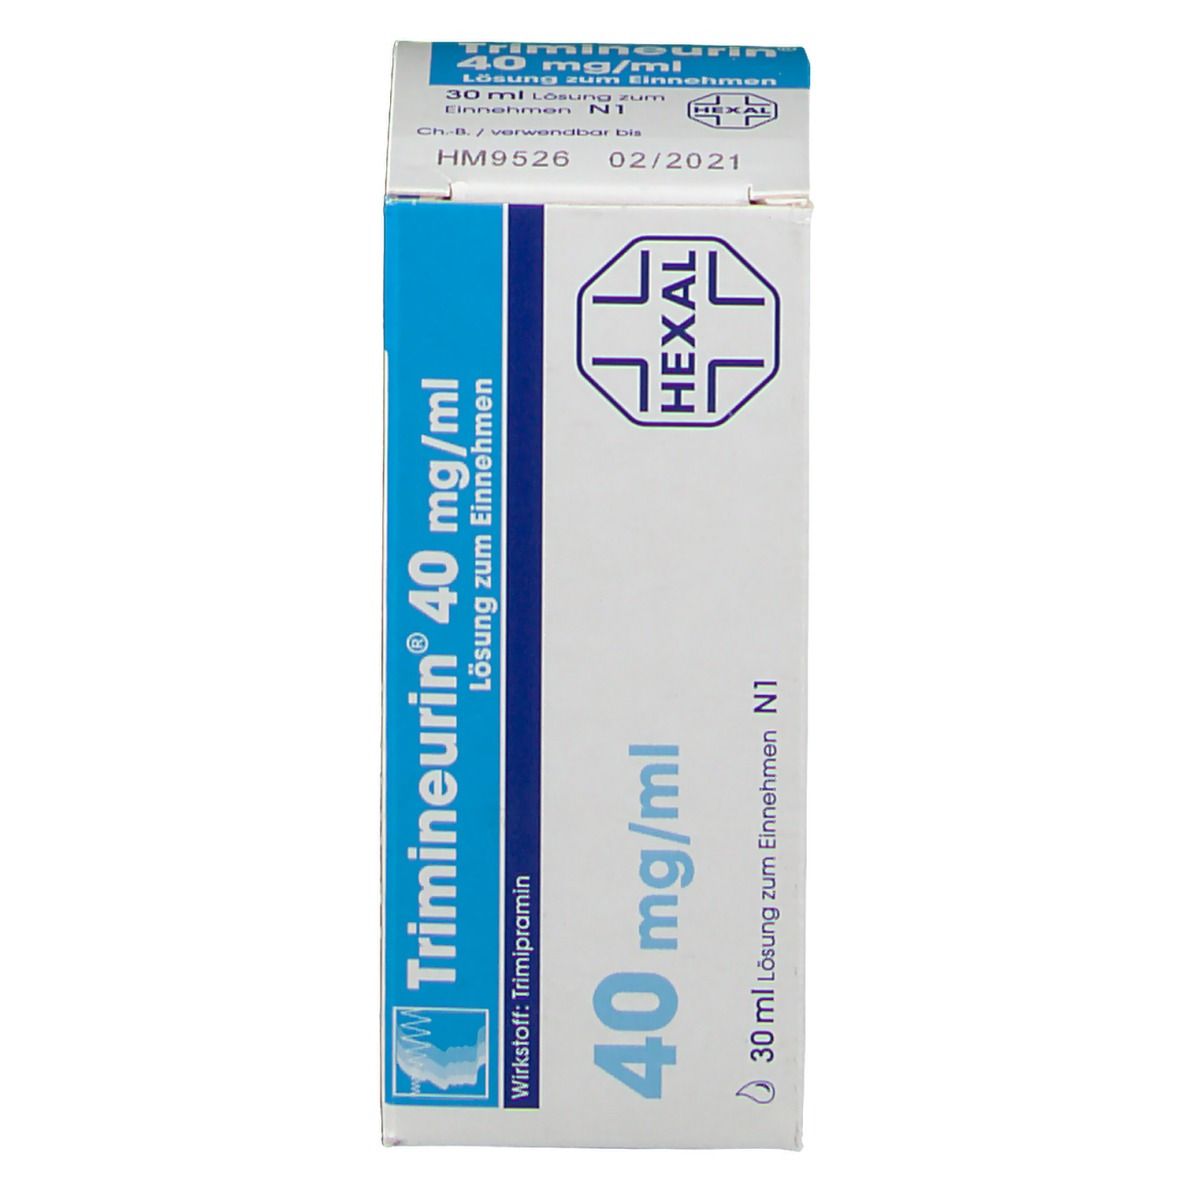 Trimineurin® 40 mg/ml